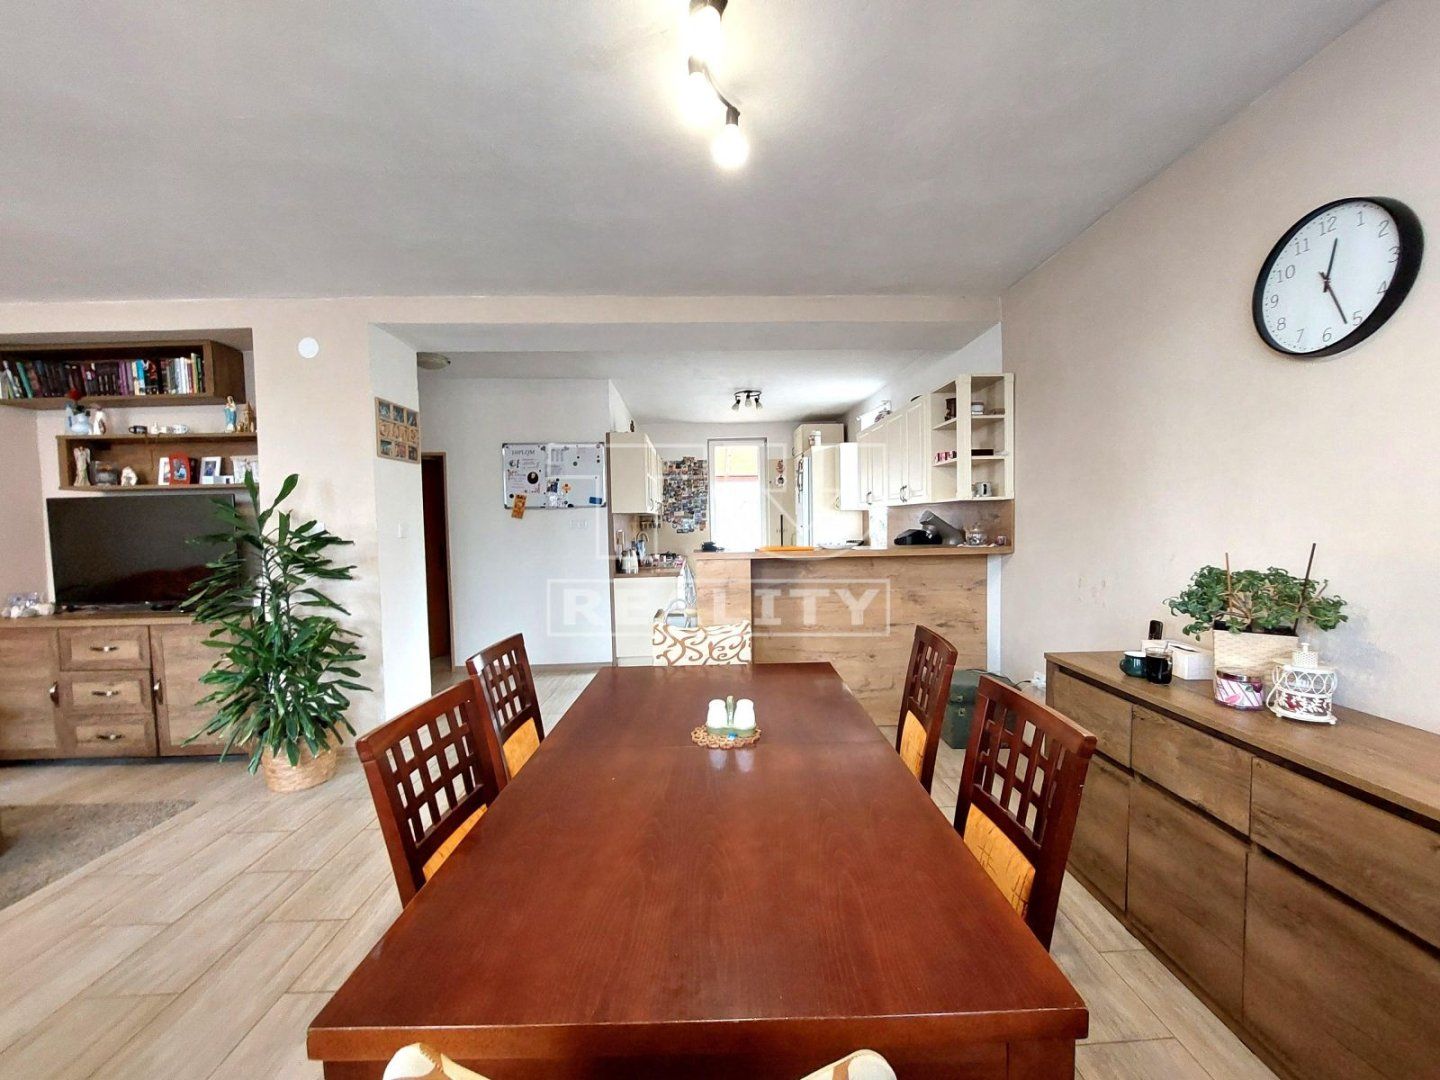 NOVÁ CENA!!!
Na predaj 6 izbový rodinný dom v príjemnej lokalite Piešťan na peknom pozemku 500 m2